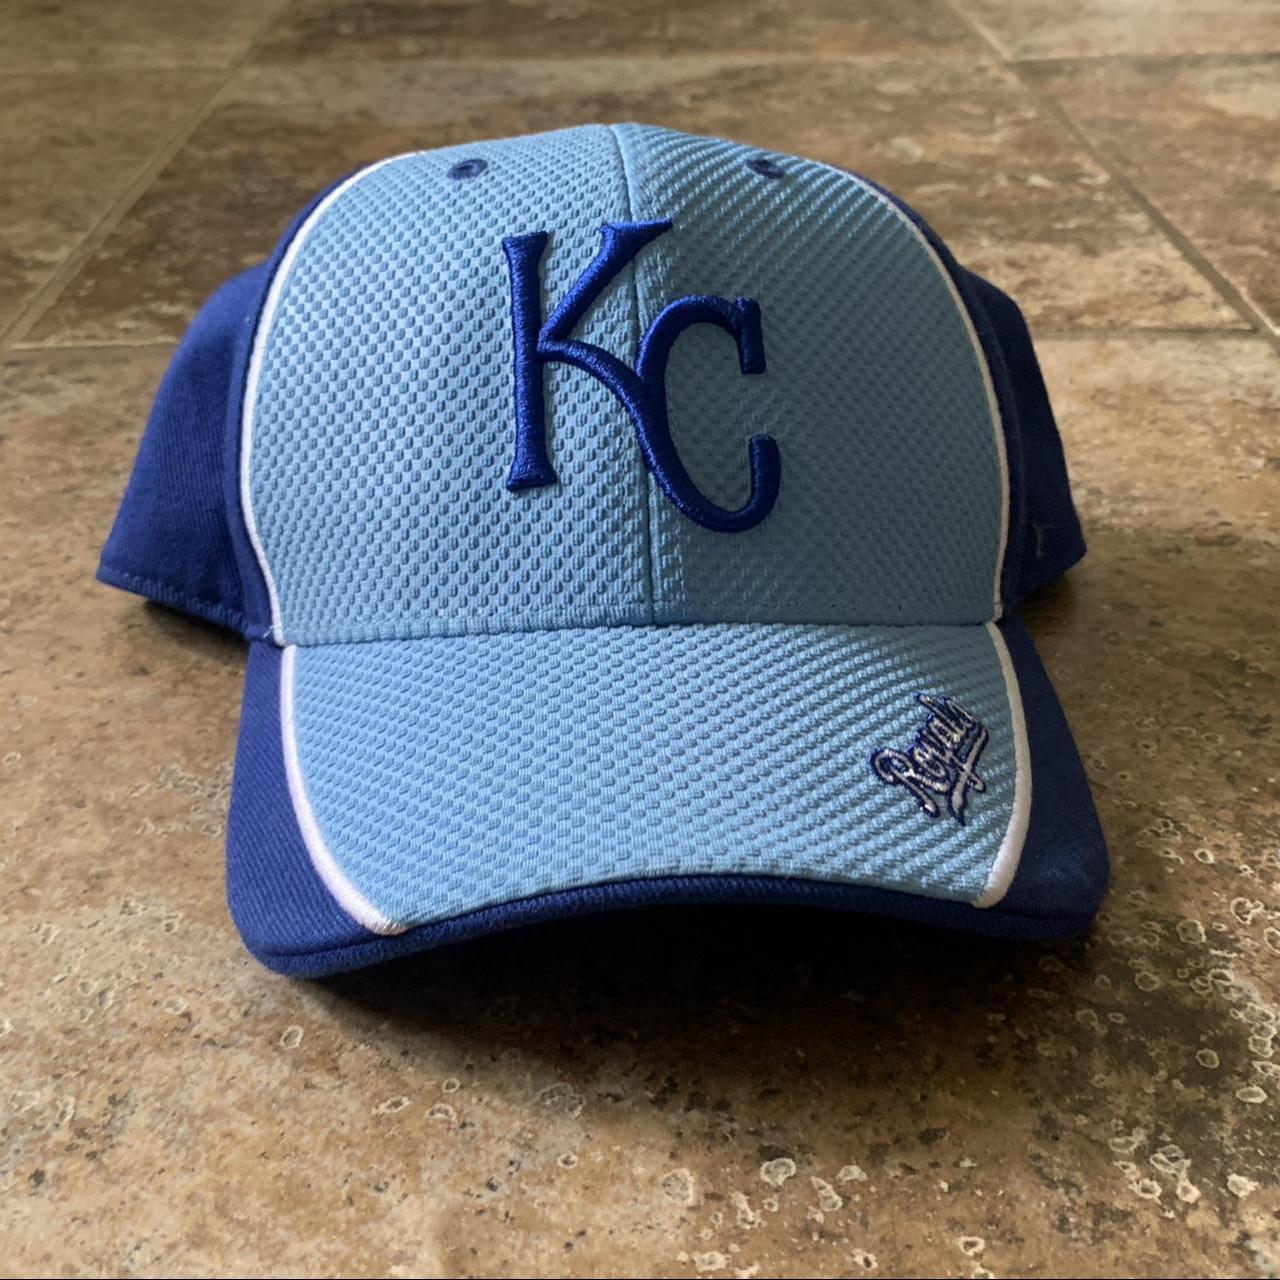 47 Men's Kansas City Royals Royal Trucker Hat